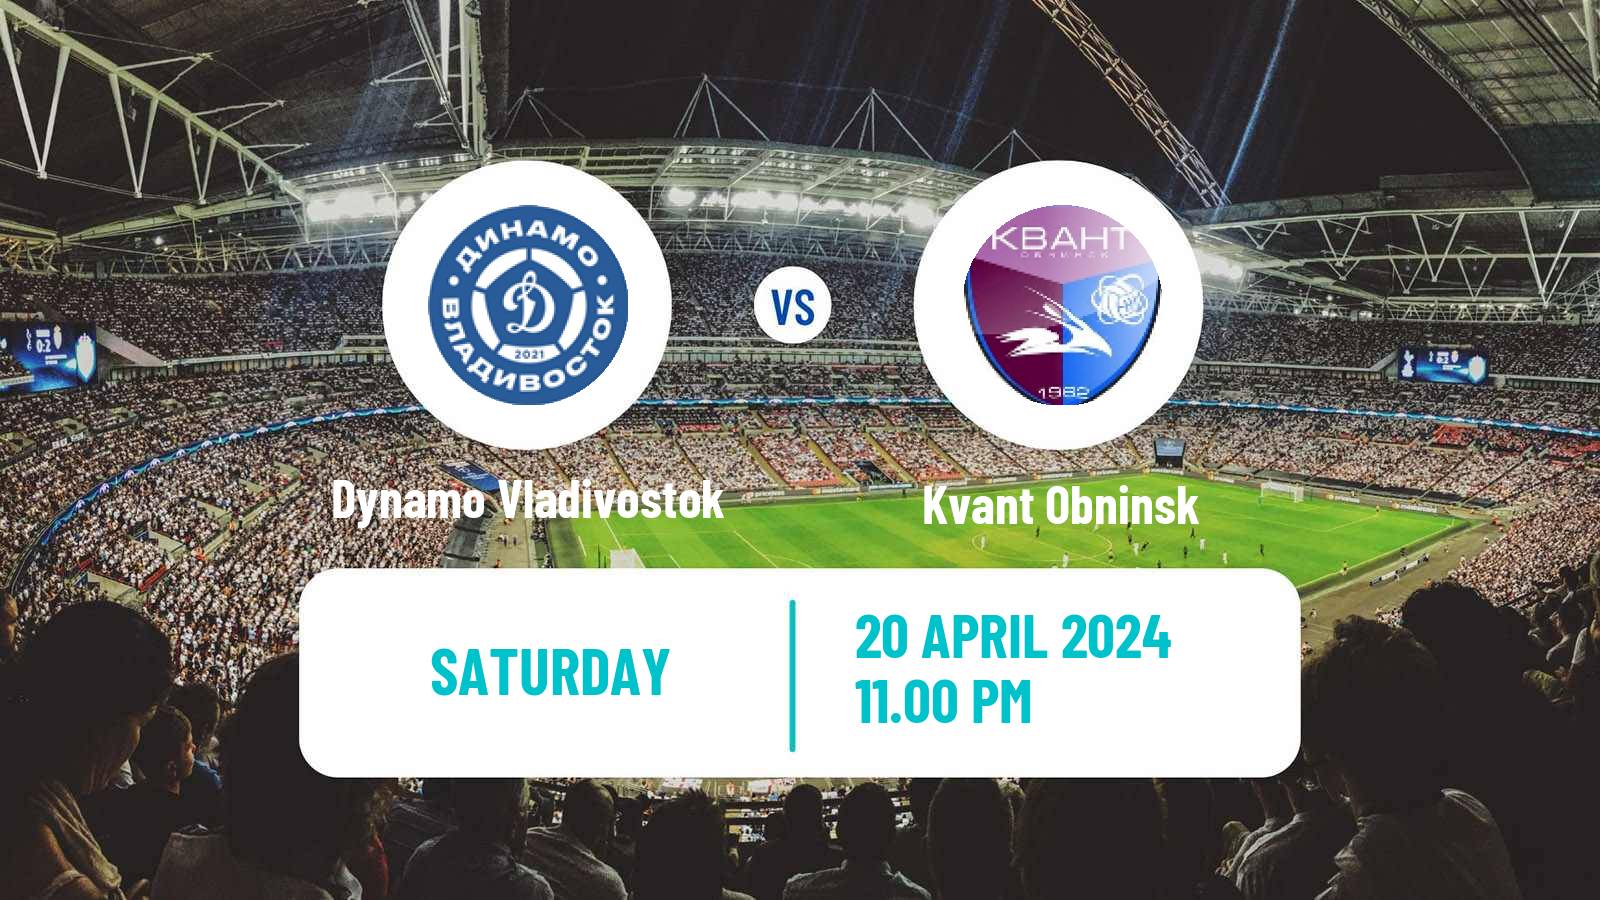 Soccer FNL 2 Division B Group 3 Dynamo Vladivostok - Kvant Obninsk